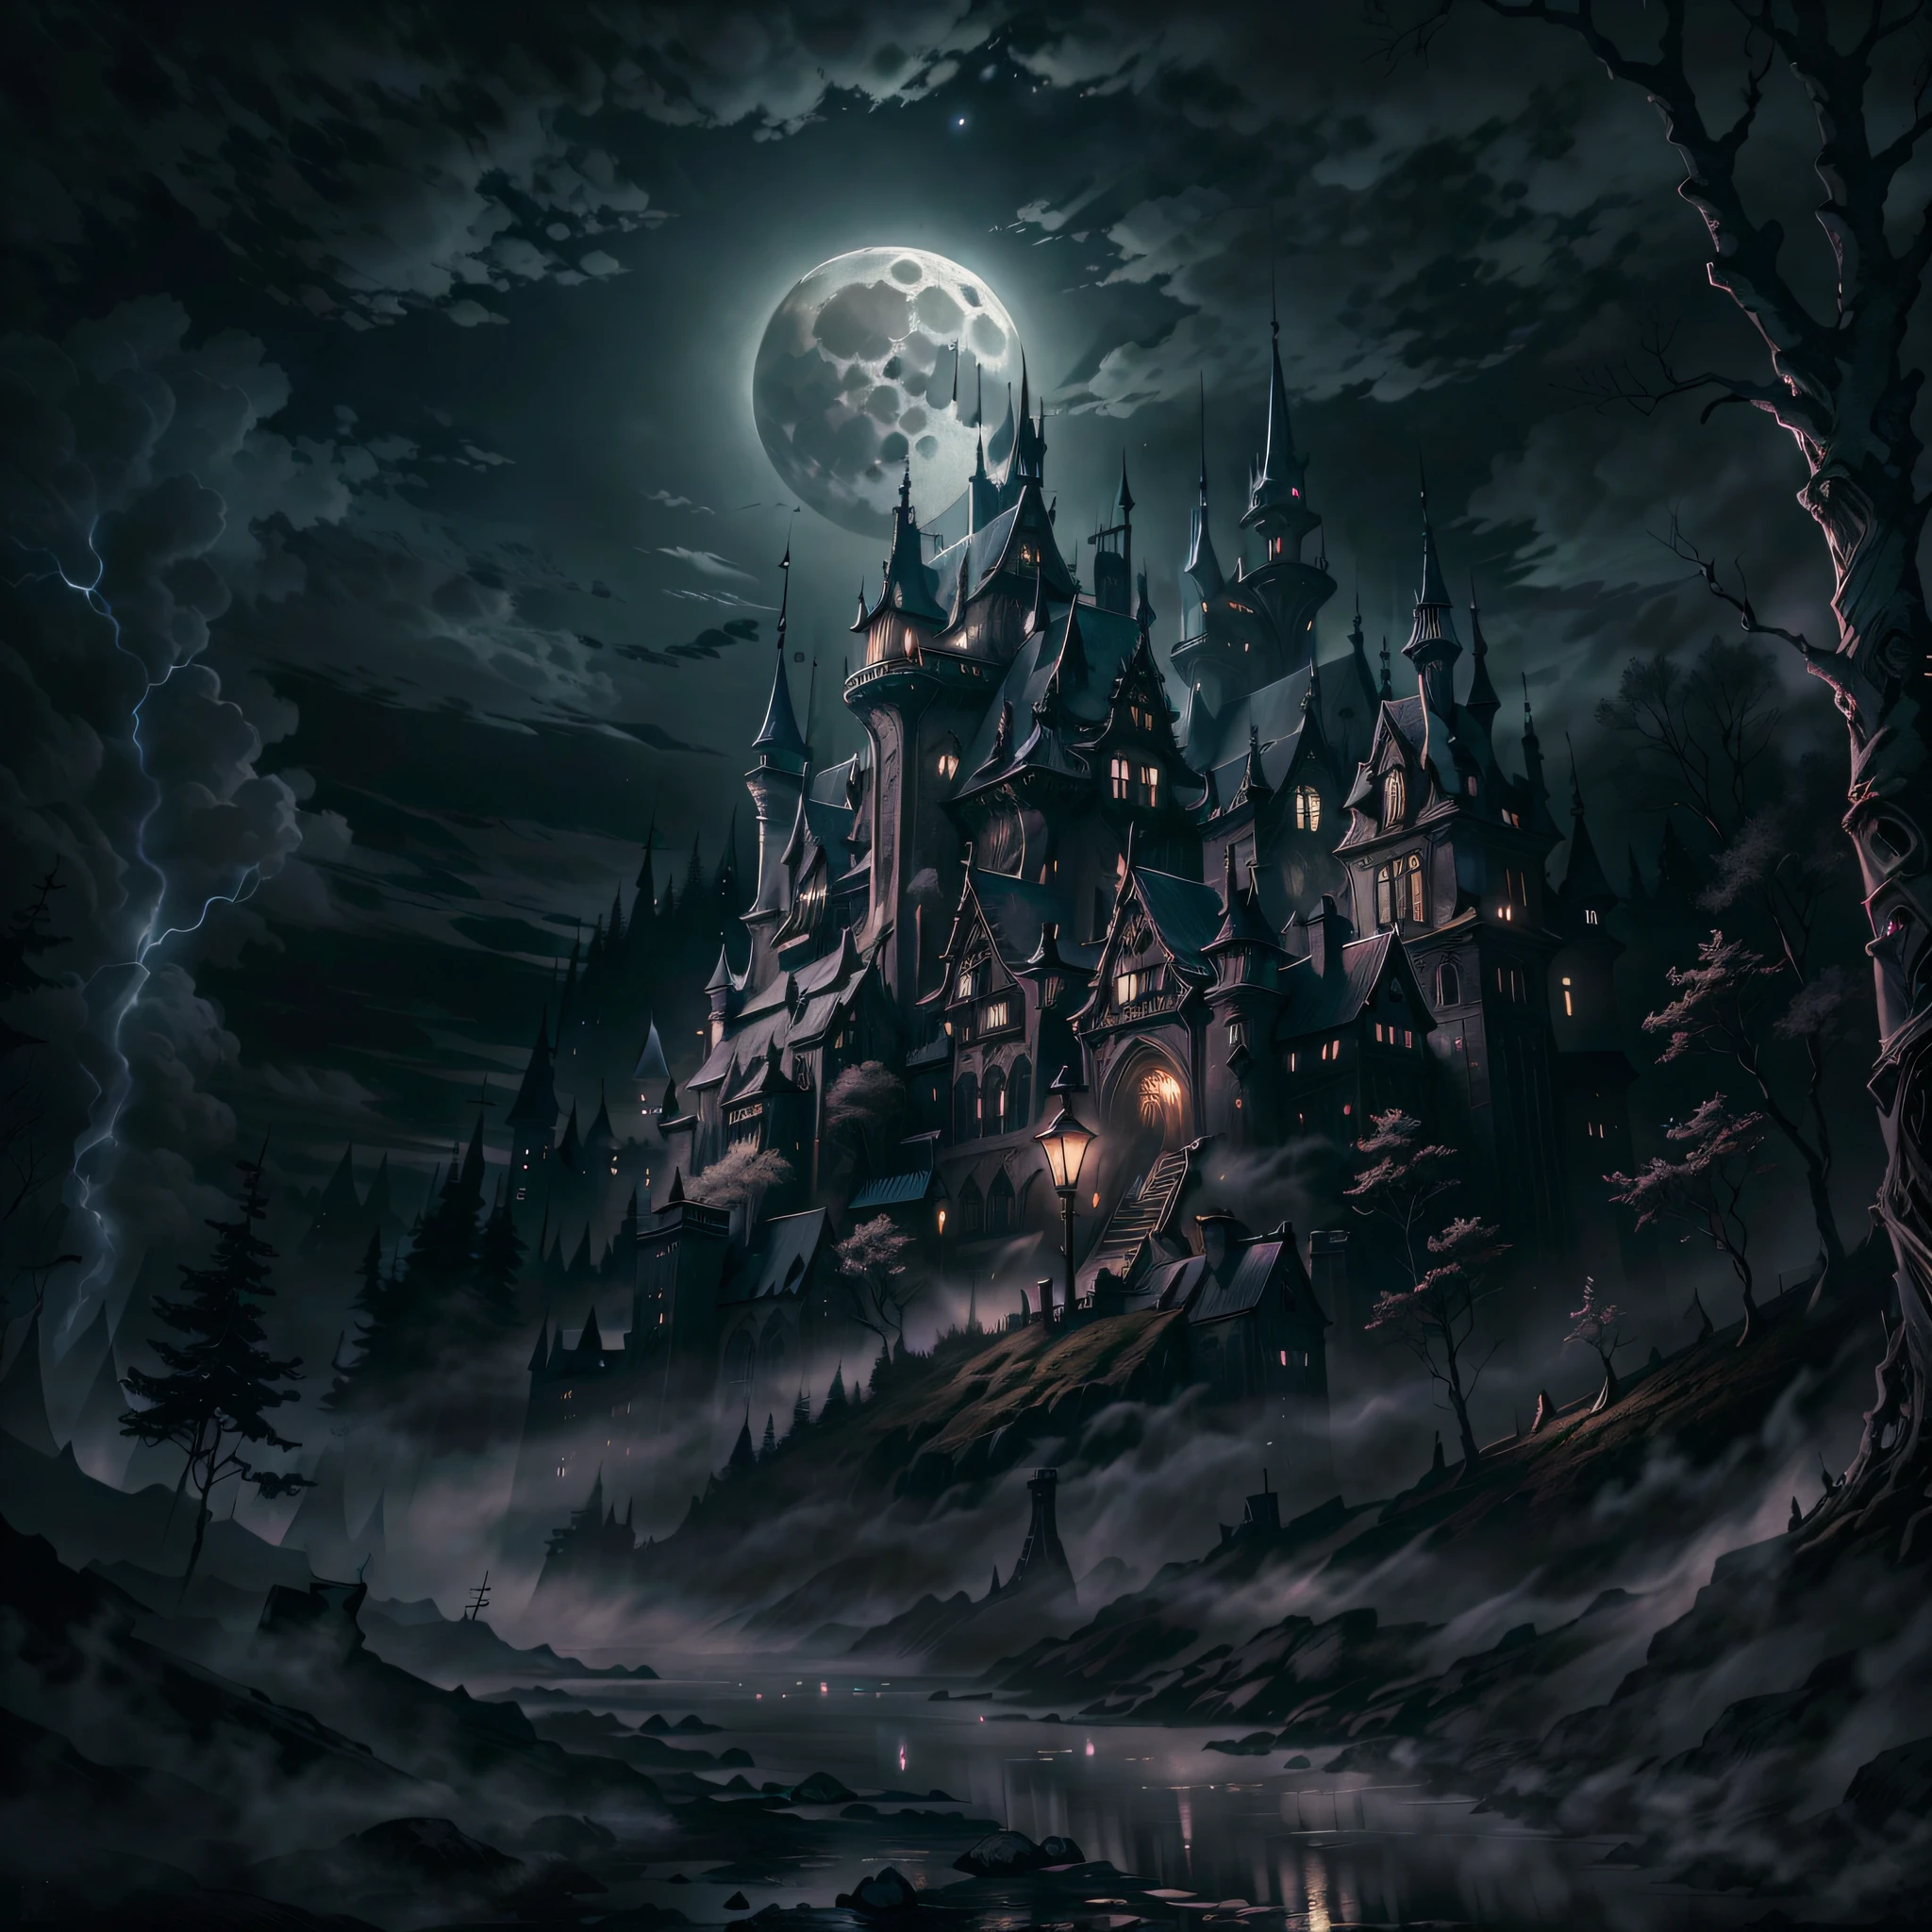 月亮, 黑夜, 阴暗的古城堡, 背景中的黑暗森林,高動態範圍,超高畫質,8K, 最好的品質, 傑作, 非常詳細, 超細塗裝